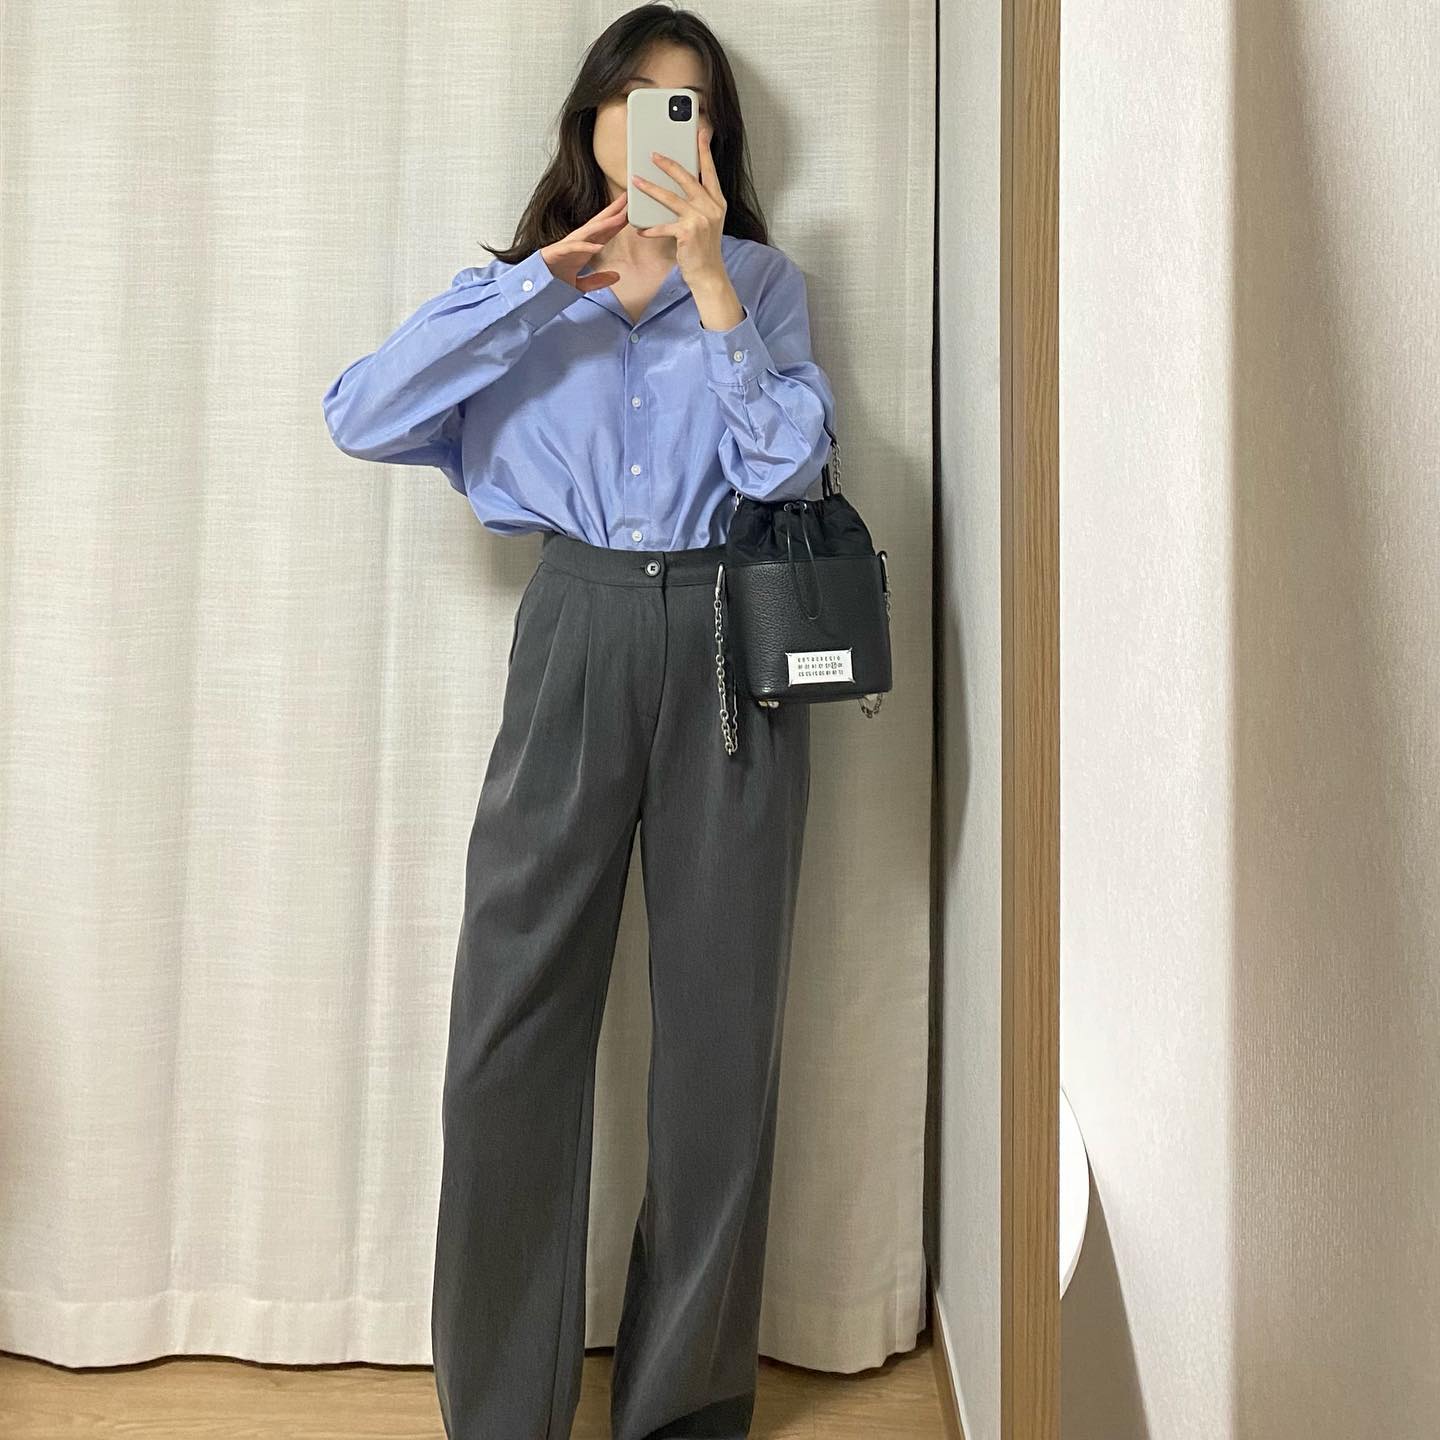 Quý cô Hàn Quốc chuyên diện áo sơ mi   quần âu theo style tối giản, nhưng có thừa độ thanh lịch trẻ trung - Ảnh 2.